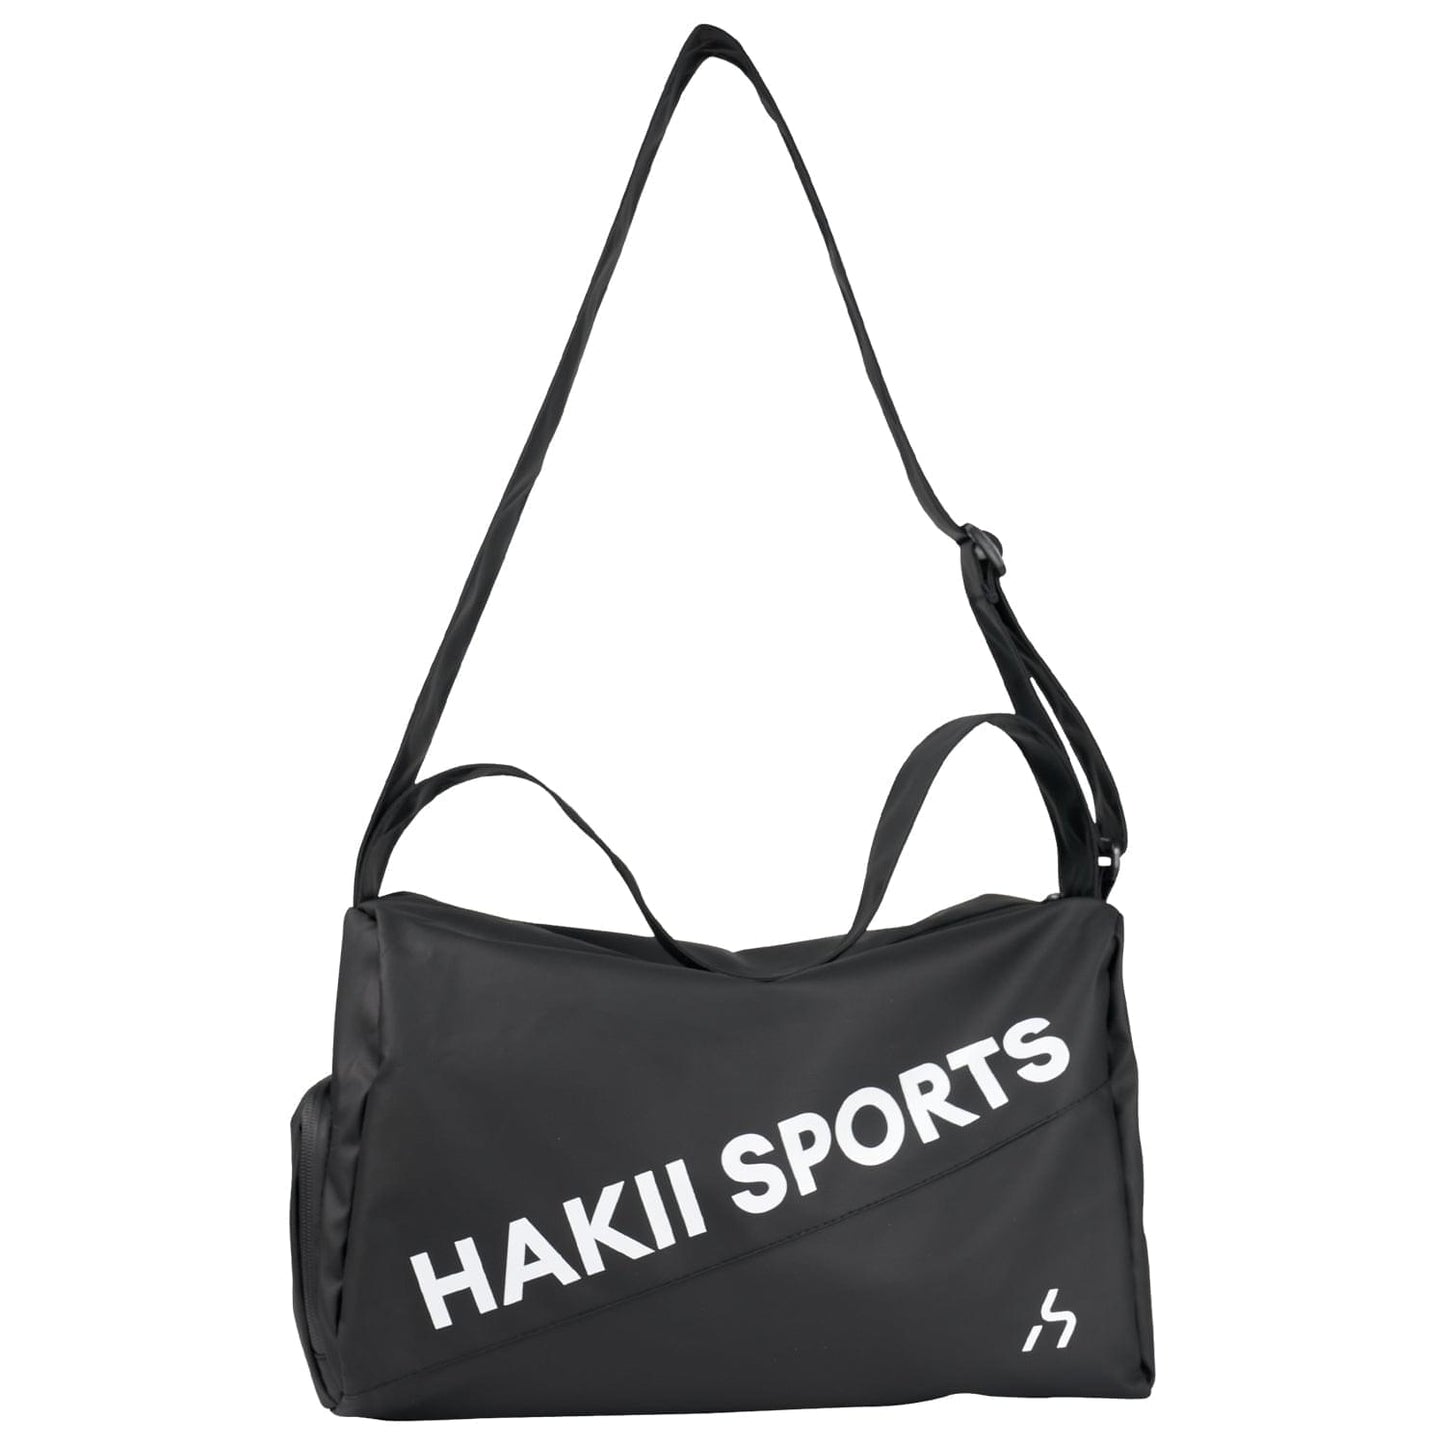 HAKII Sporttasche